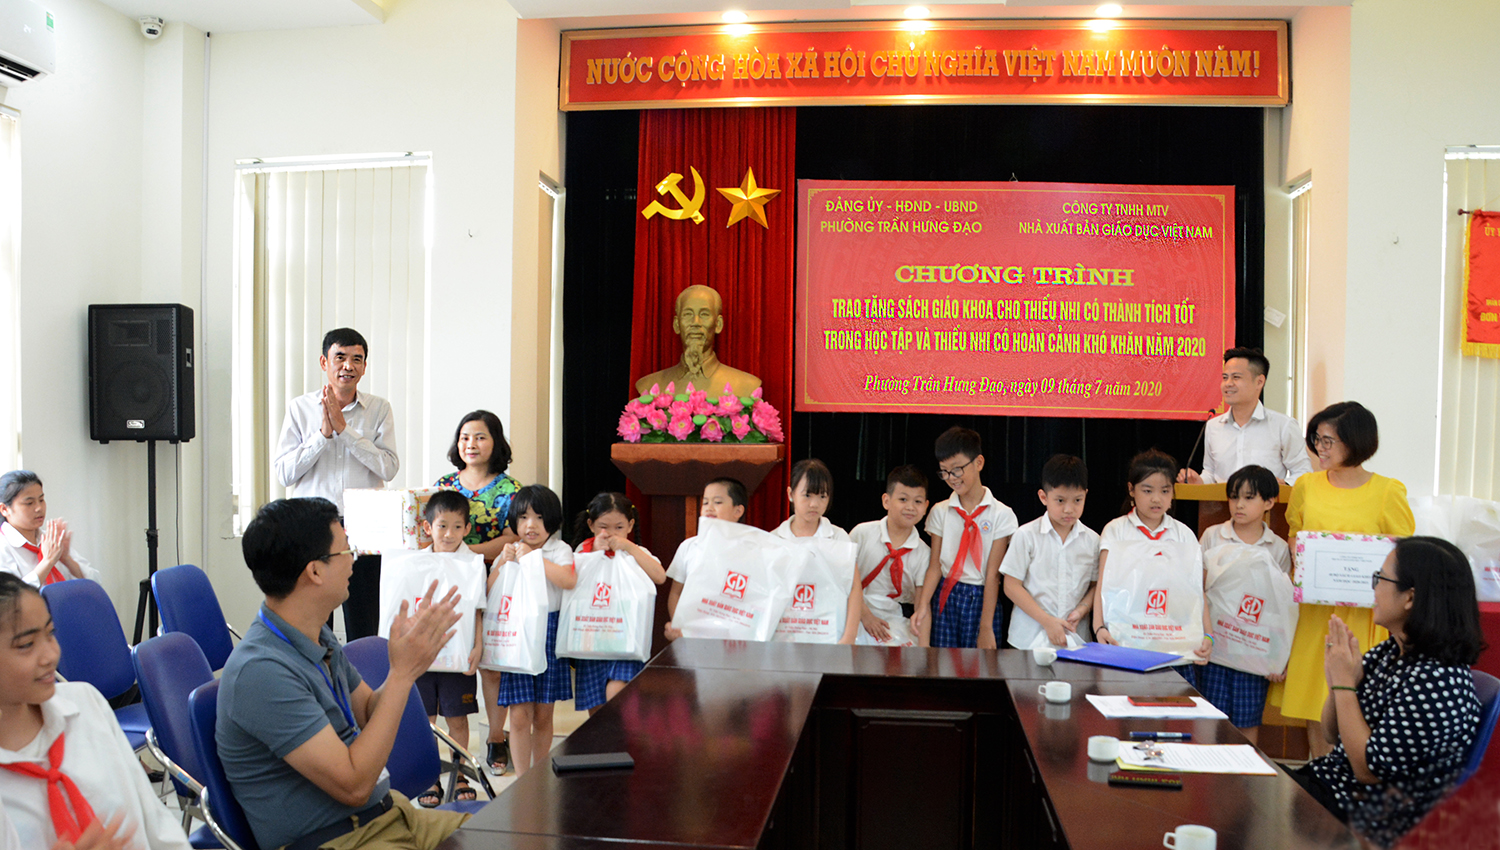 Trao tặng 139 bộ sách giáo khoa cho thiếu nhi có hoàn cảnh khó khăn phường Trần Hưng Đạo